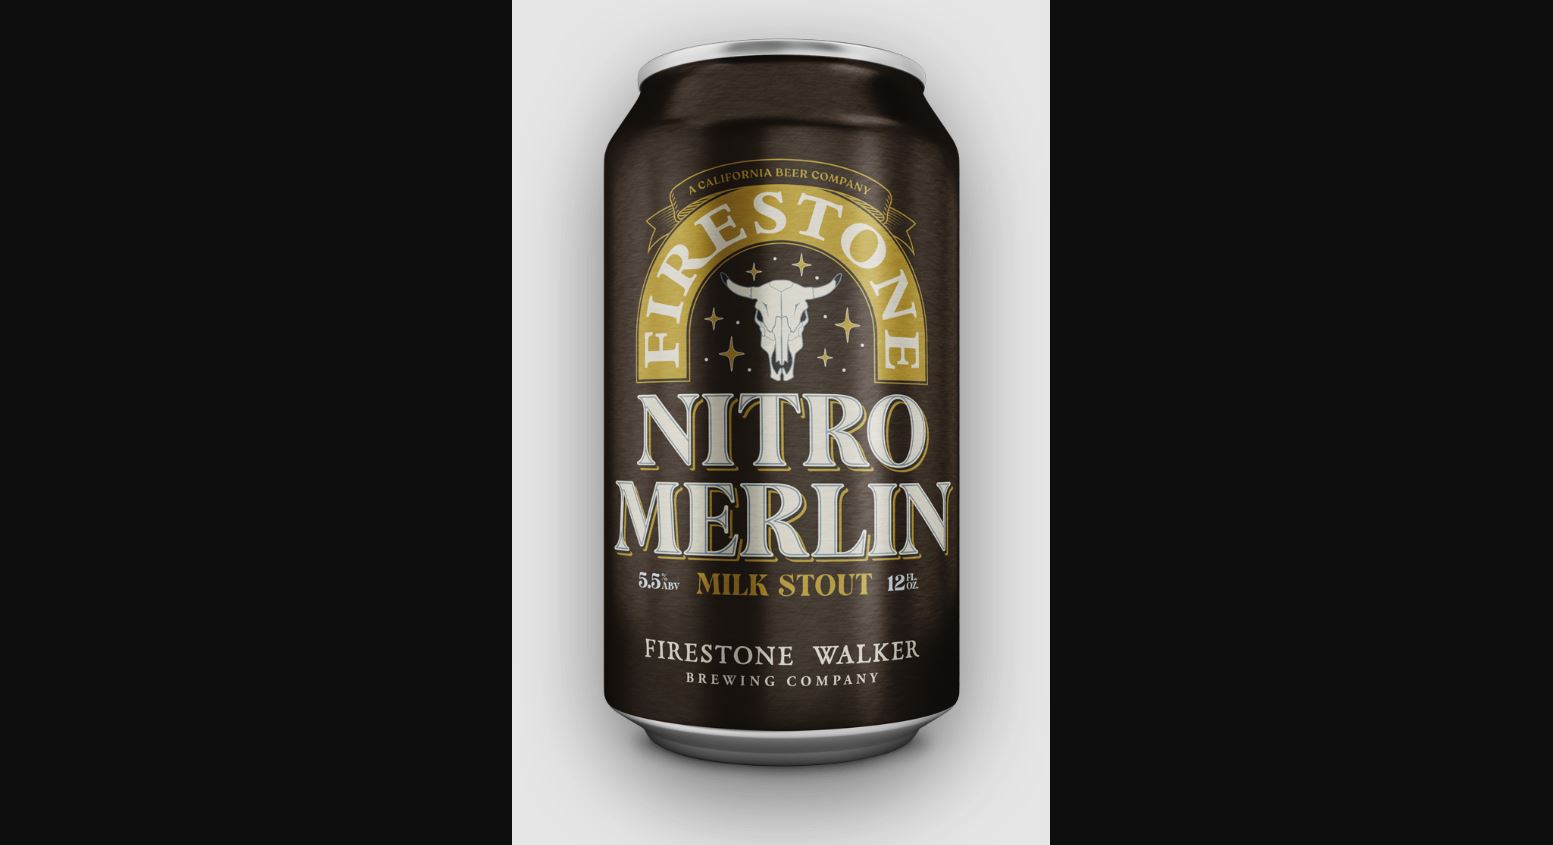 Firestone Walker Nitro Merlin